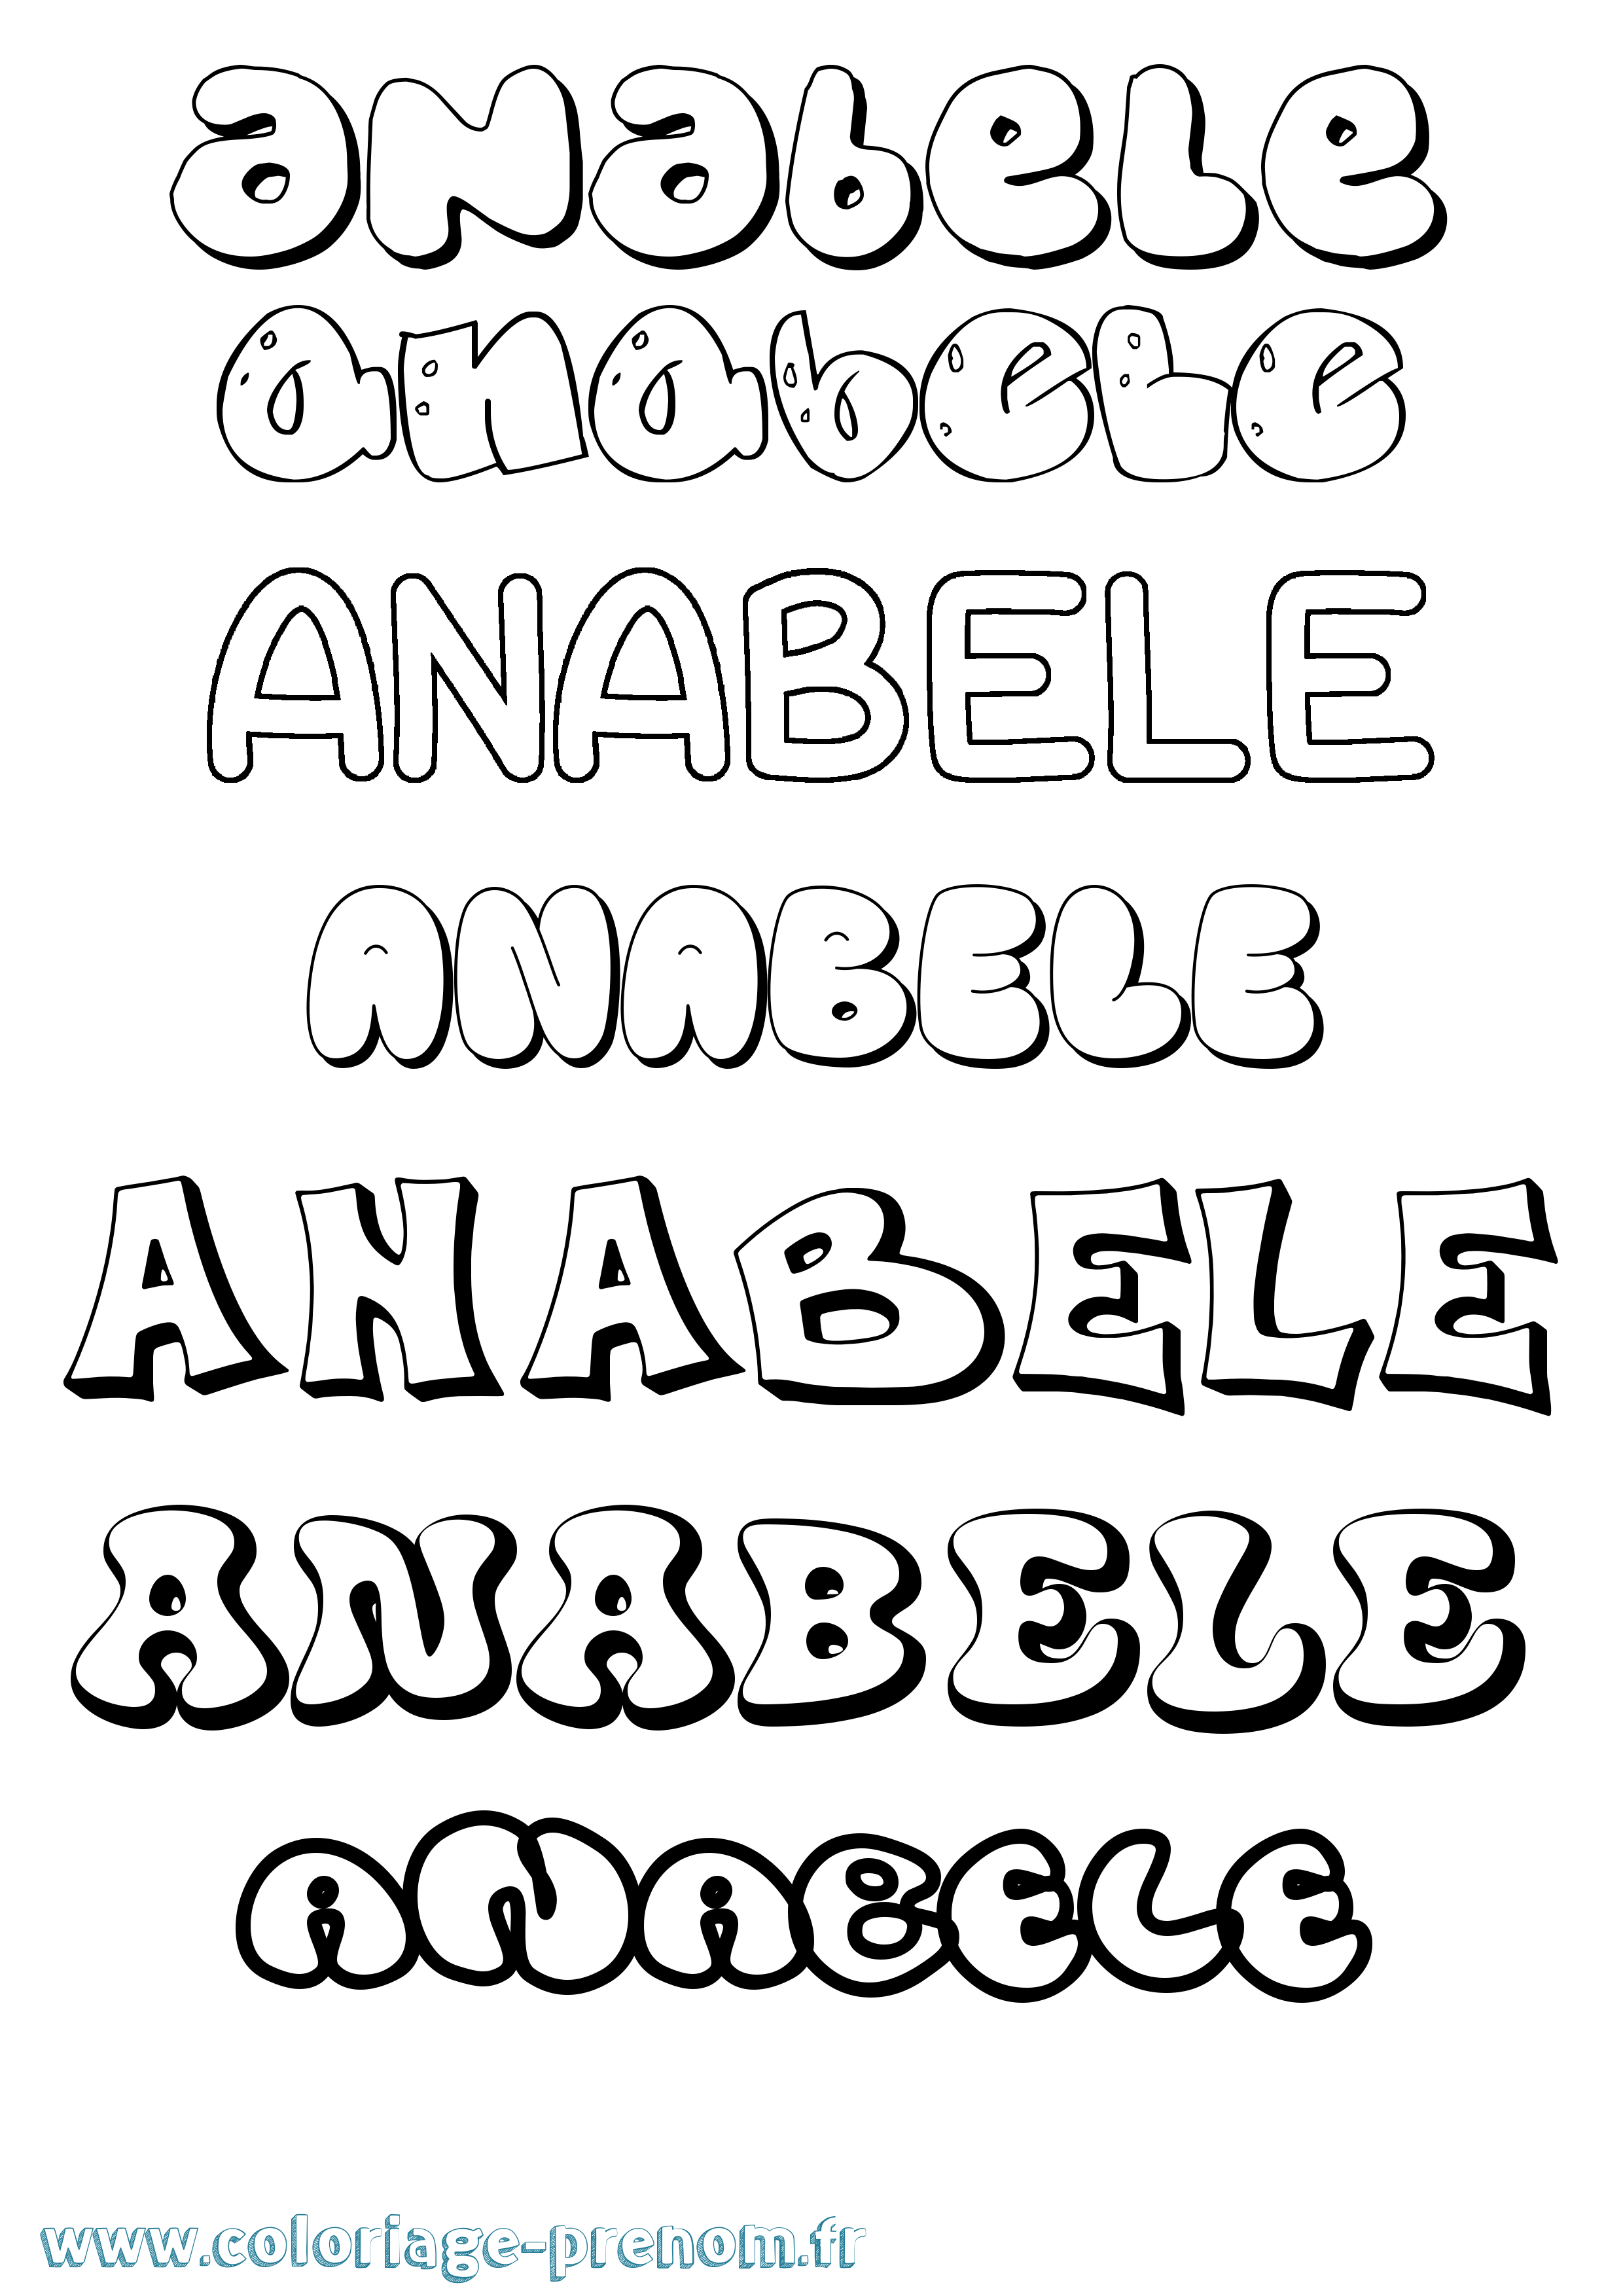 Coloriage prénom Anabele Bubble